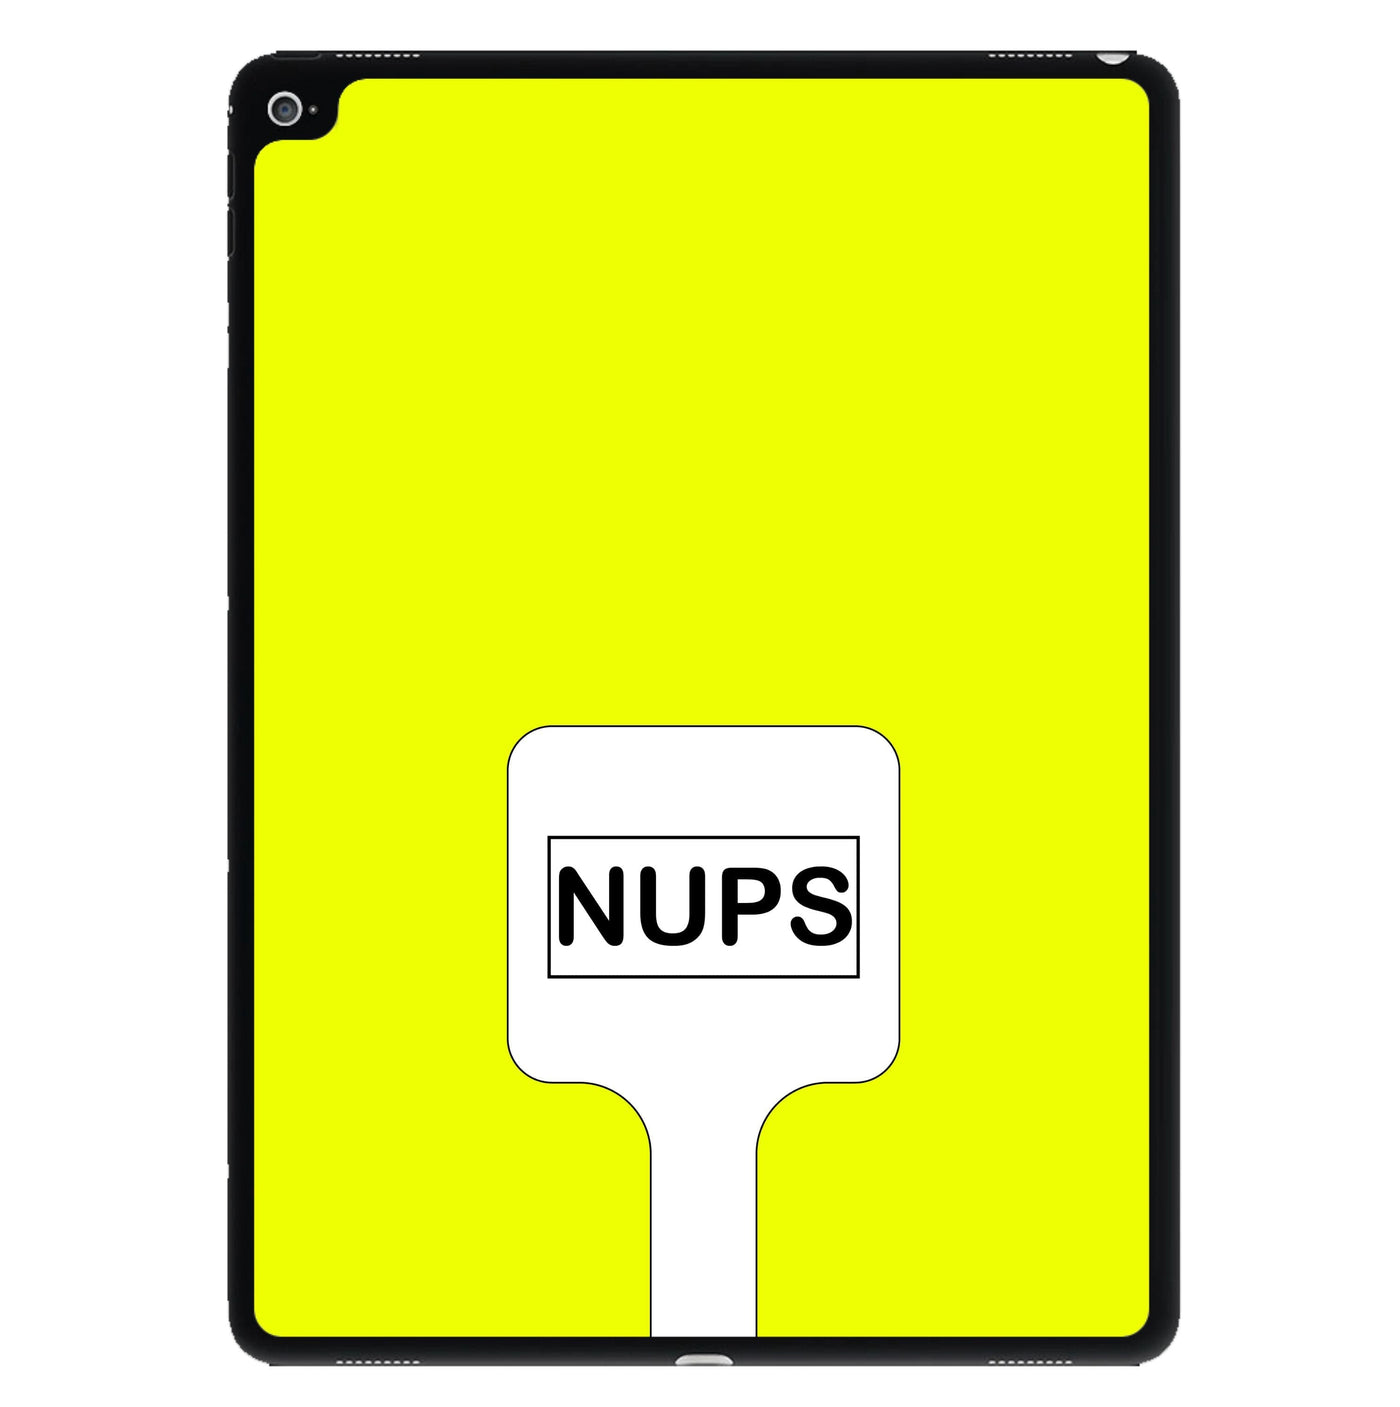 Nups - Brooklyn Nine-Nine iPad Case